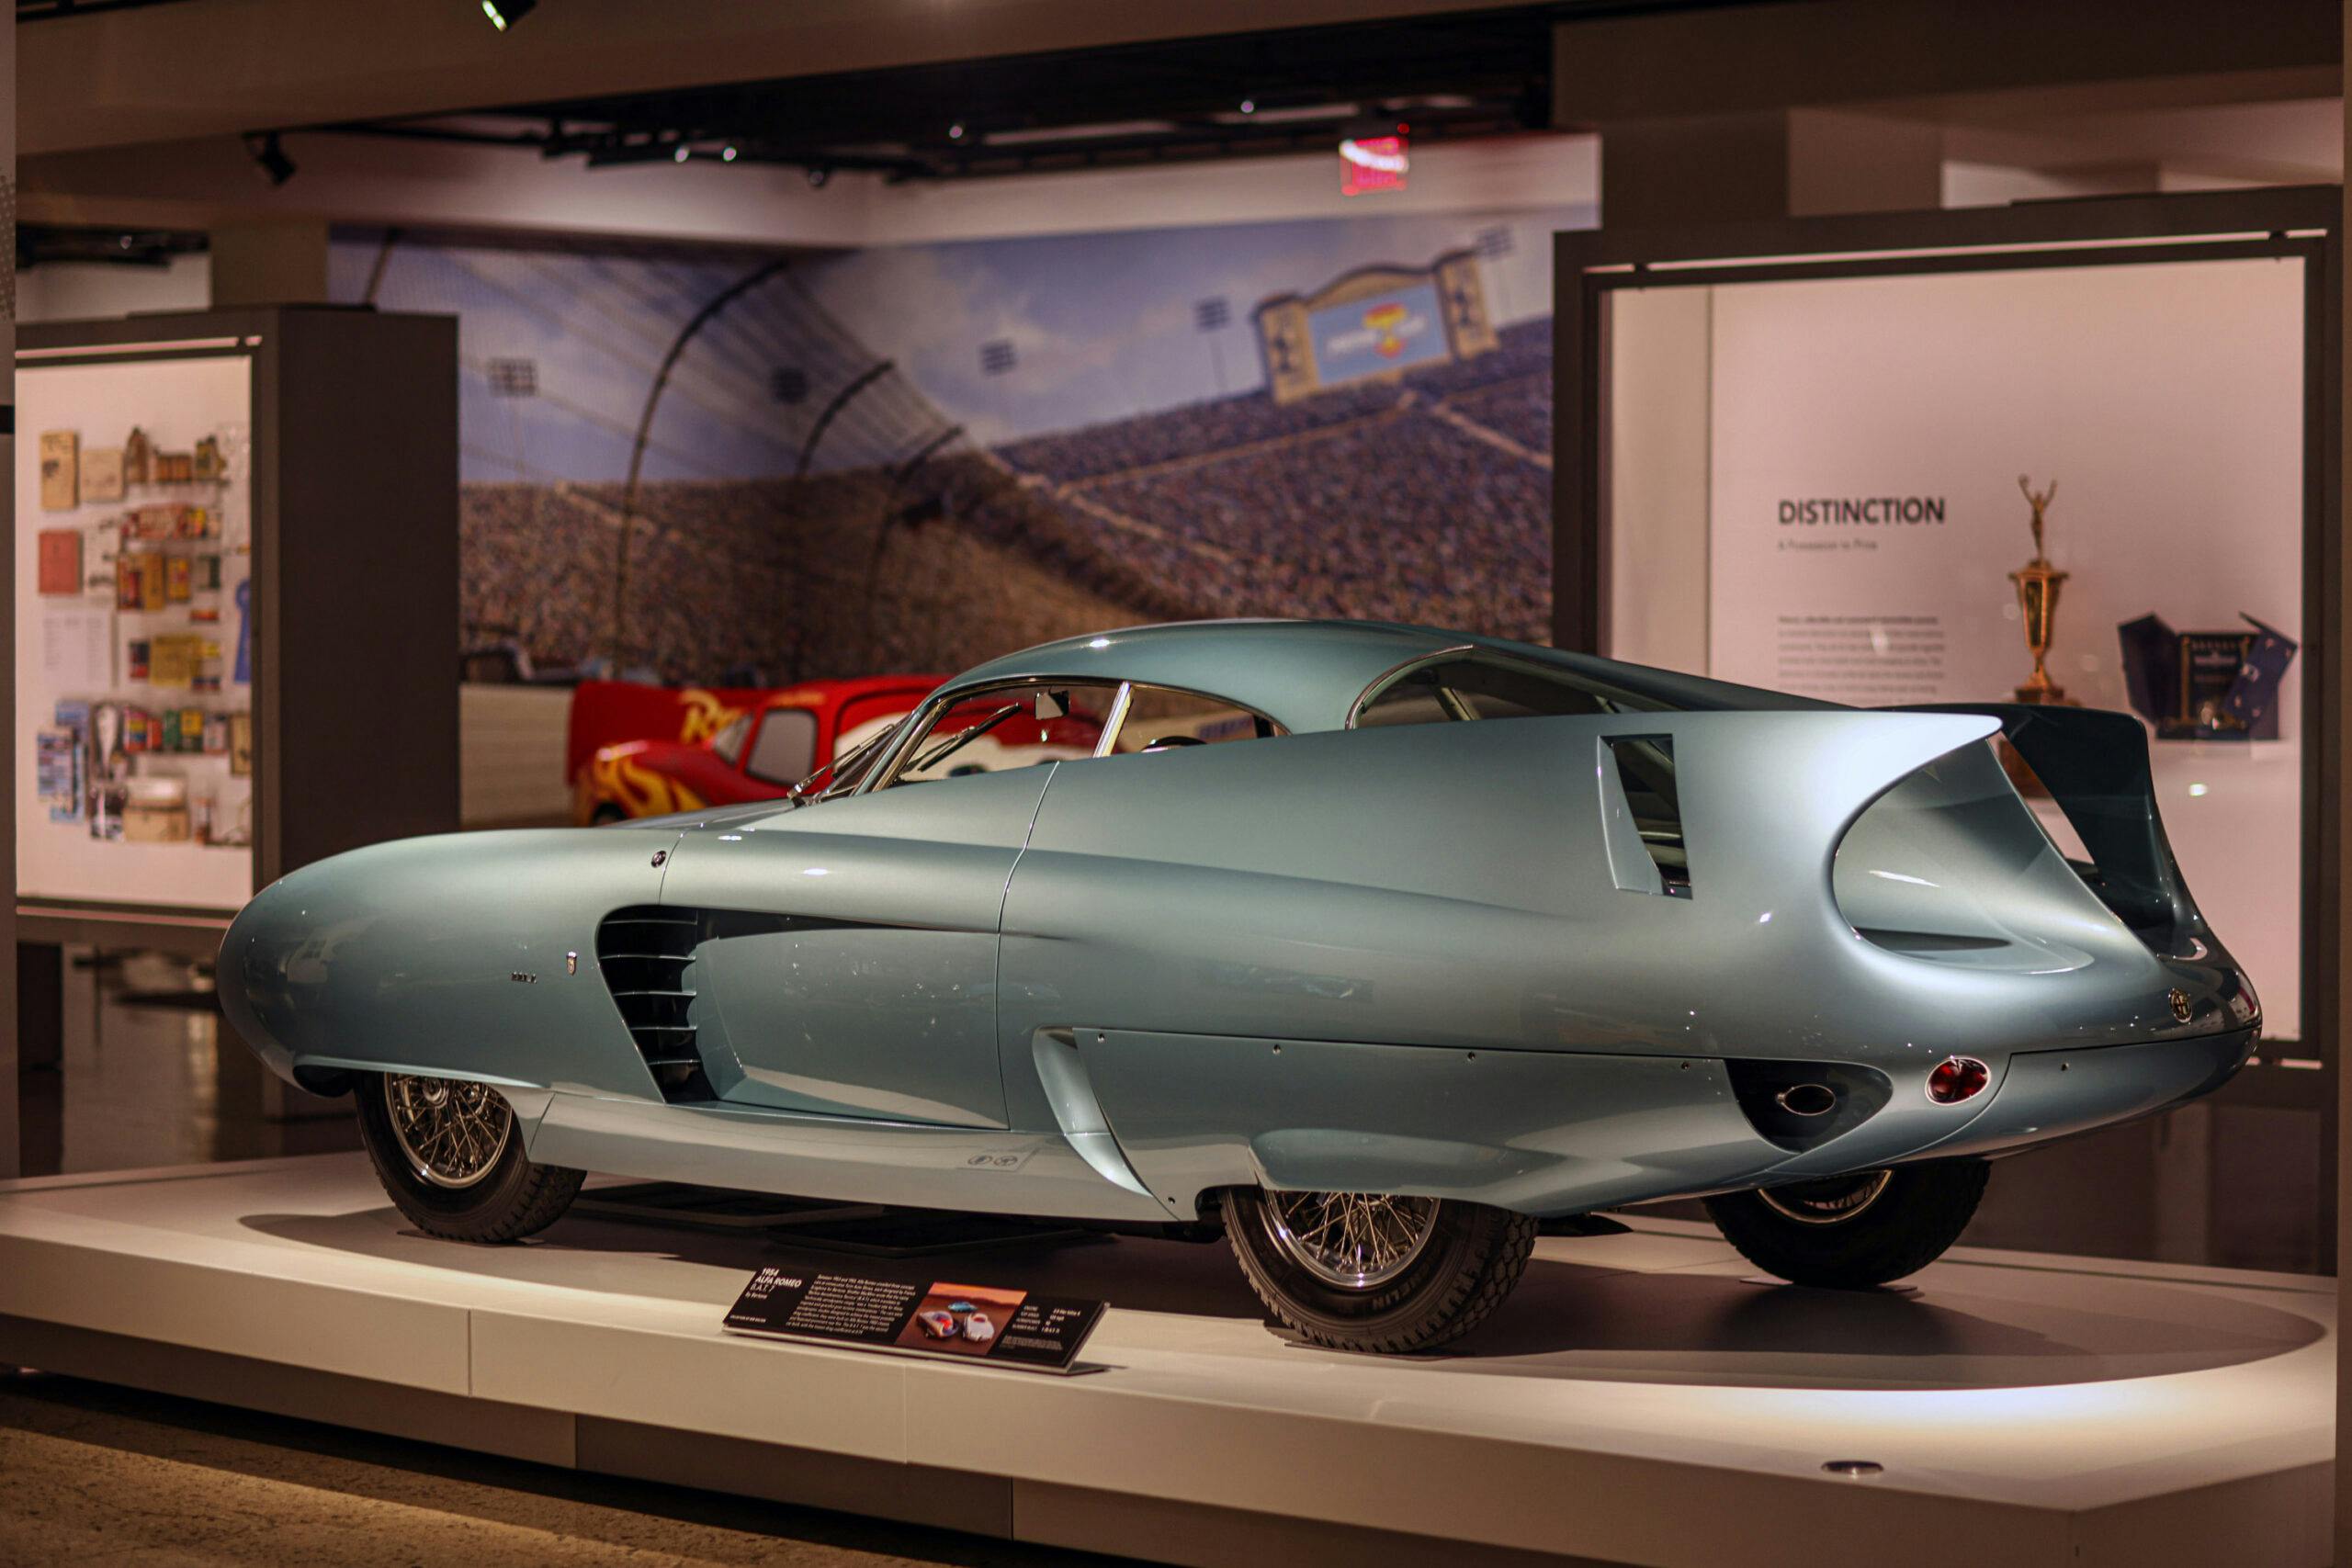 petersen l.a. museum car 1950s sports car concepts dream